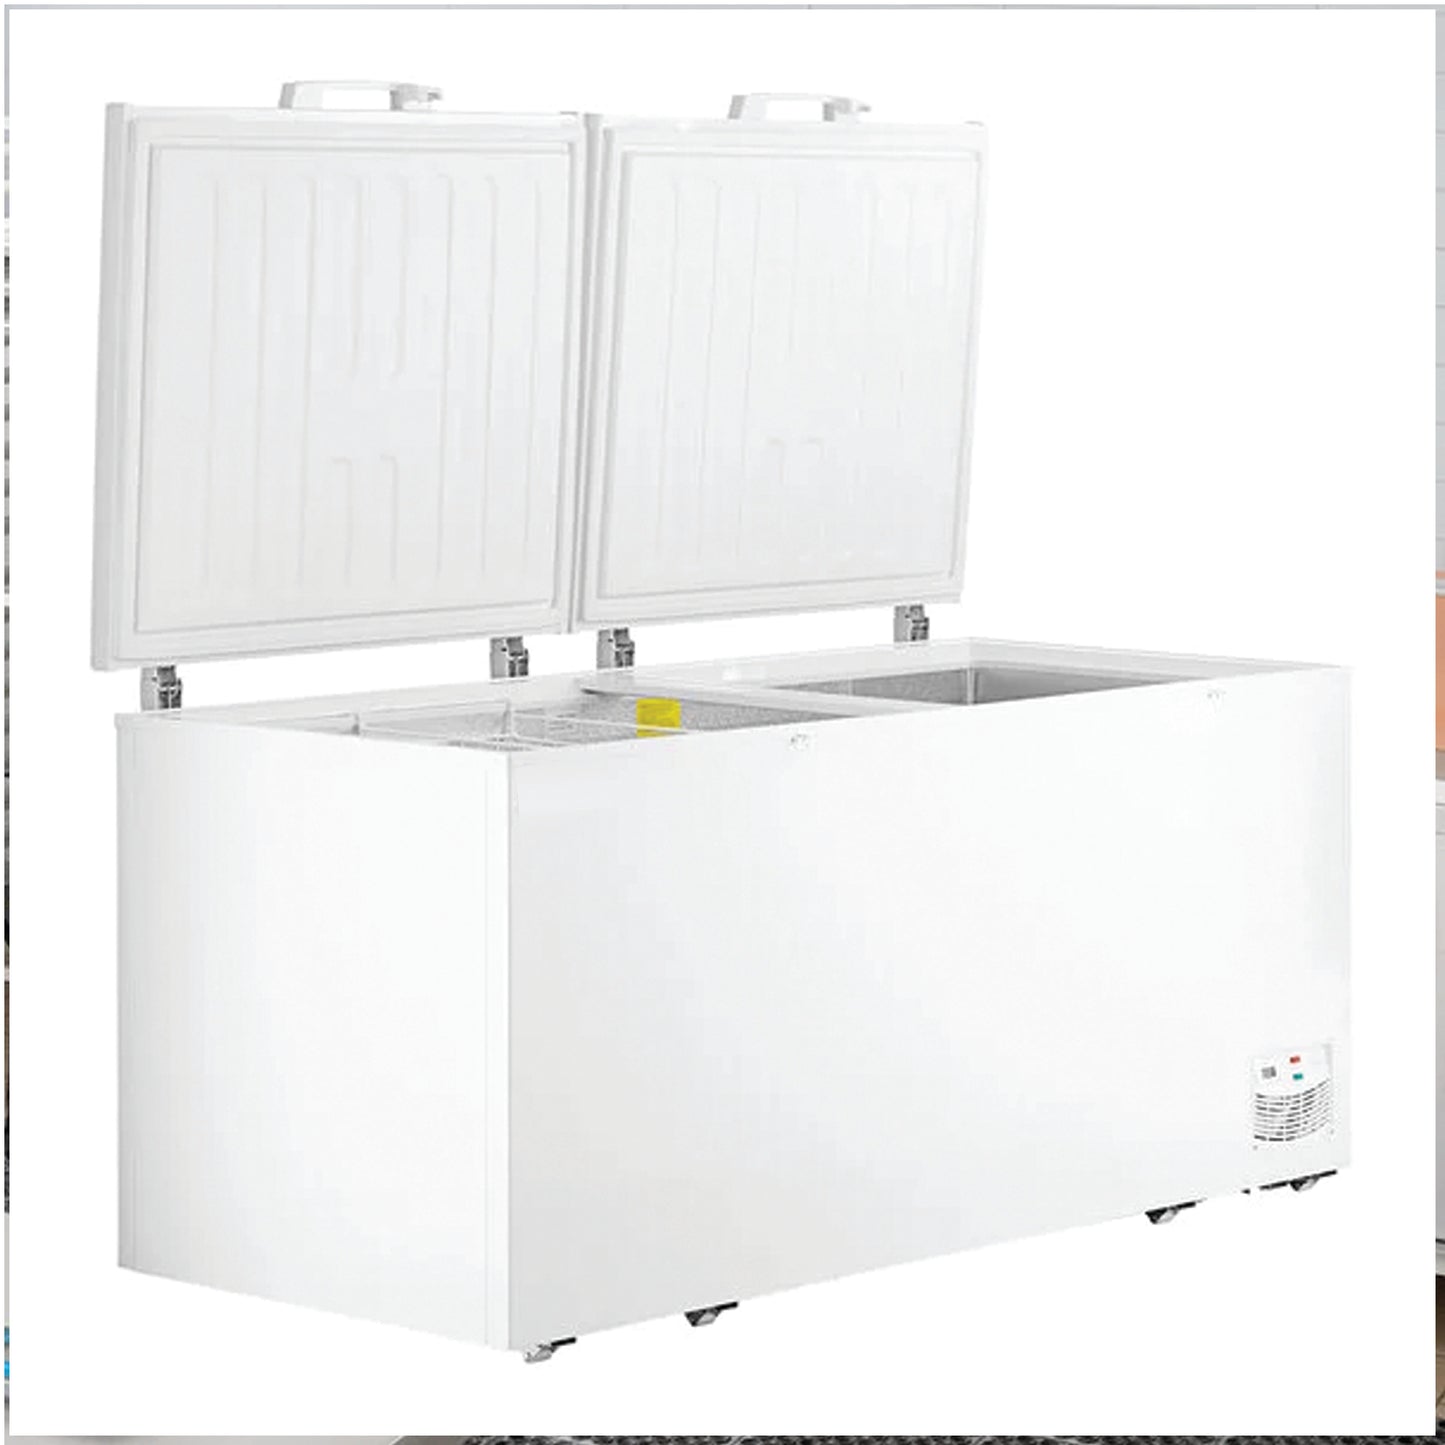 Advance Kitchen Pros - CF763635, 76" Commercial Chest Freezer 30 cu.ft. ETL